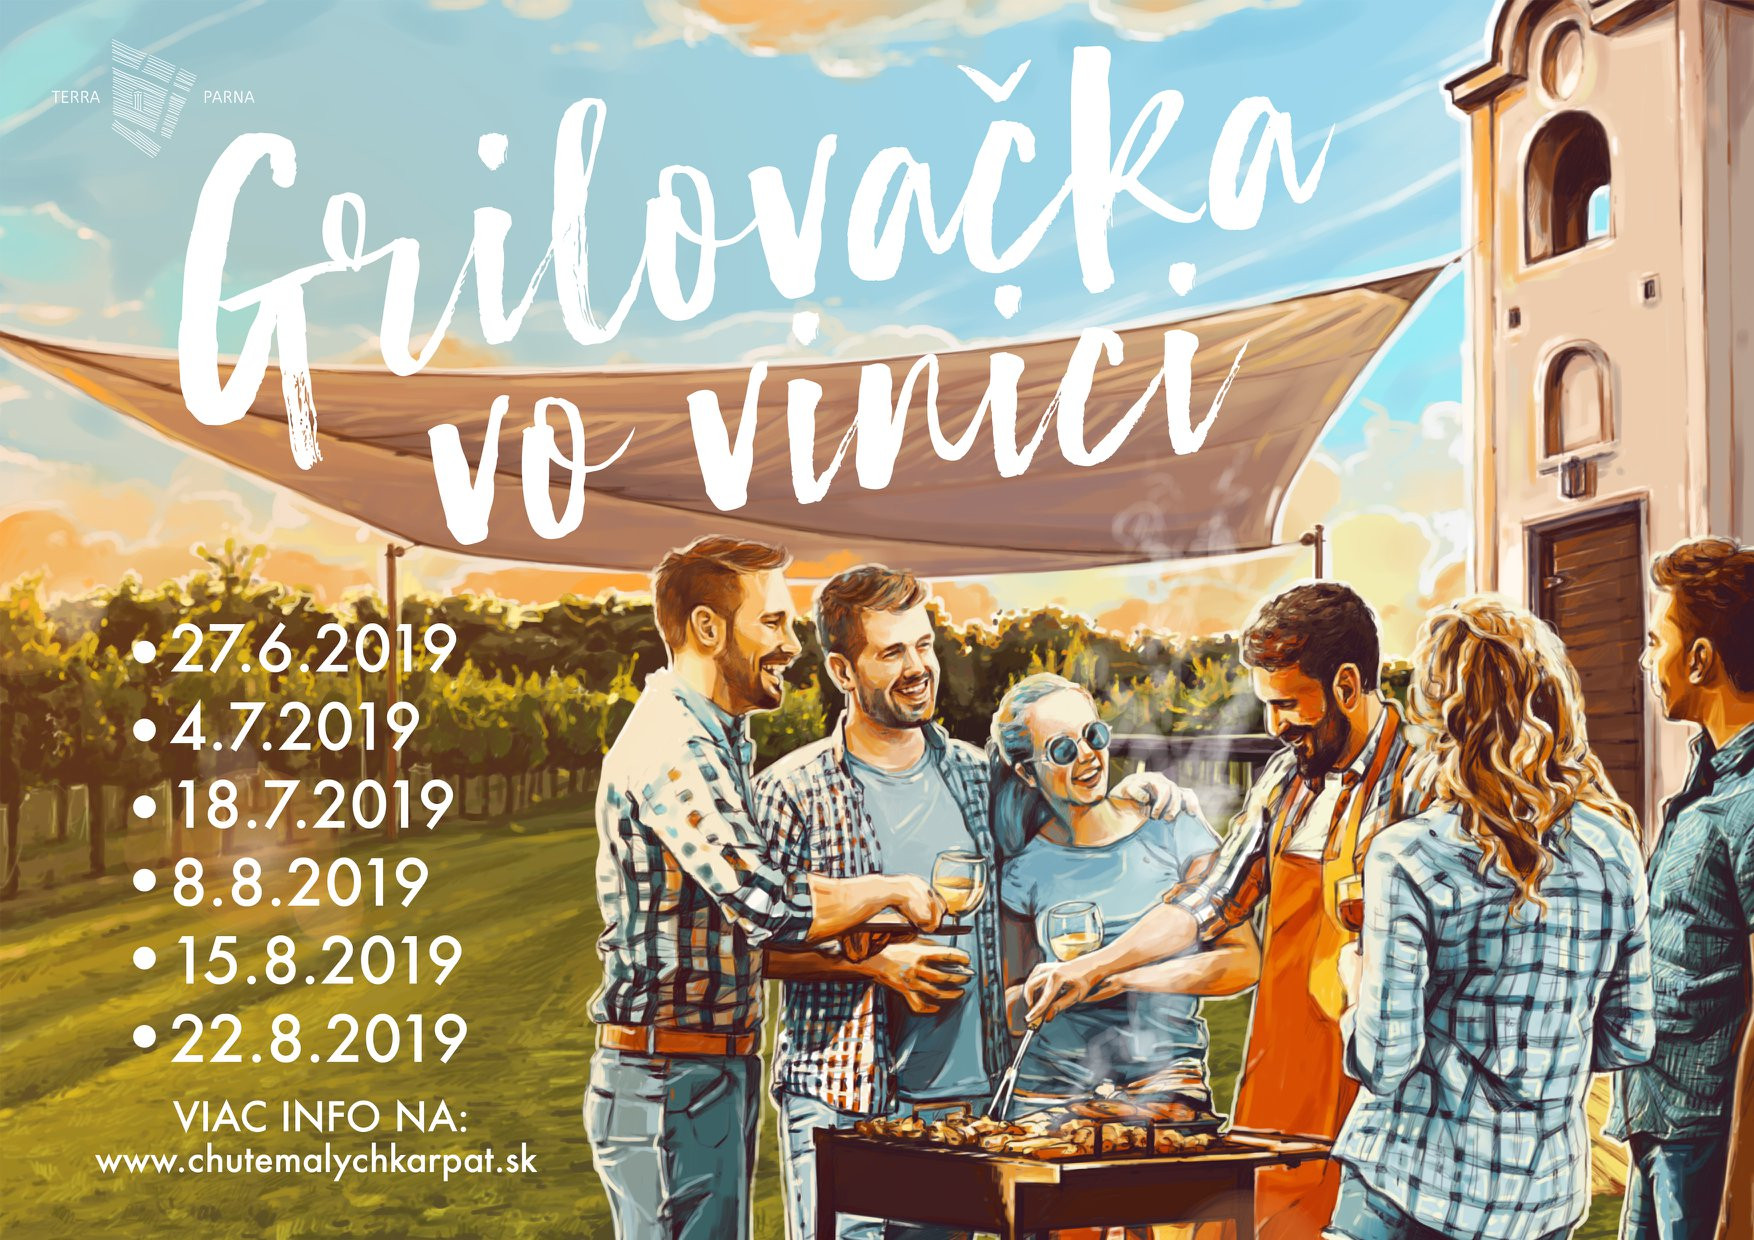 Grilovačky vo vinici - TERRA PARNA (júl - august 2019)